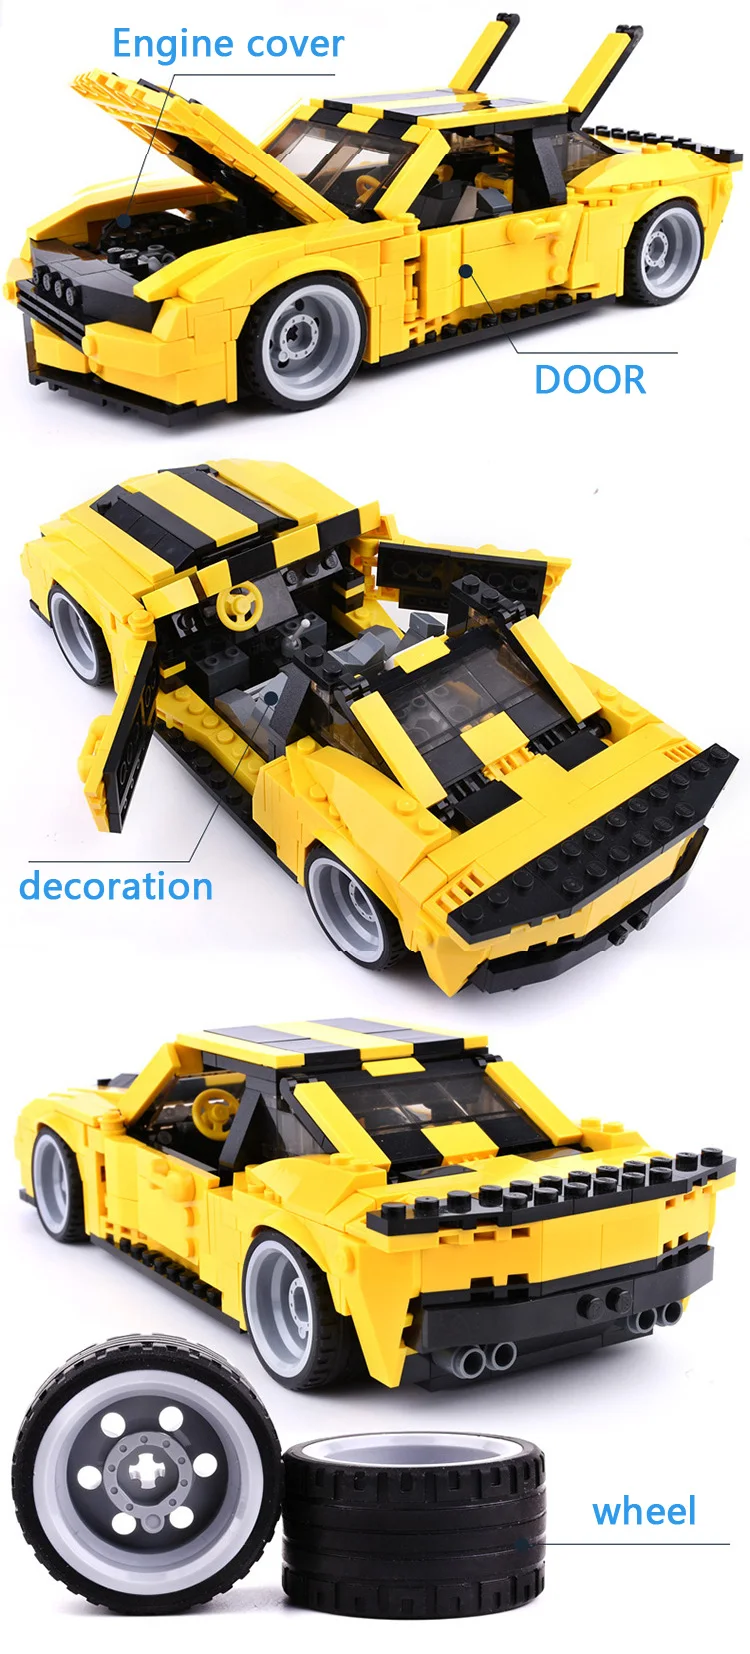 Горячий фильм изображение супер Трансформация Робот Шмель пчела Chevrolet мышцы спортивный автомобиль Camaro строительный блок модель игрушки коллекция